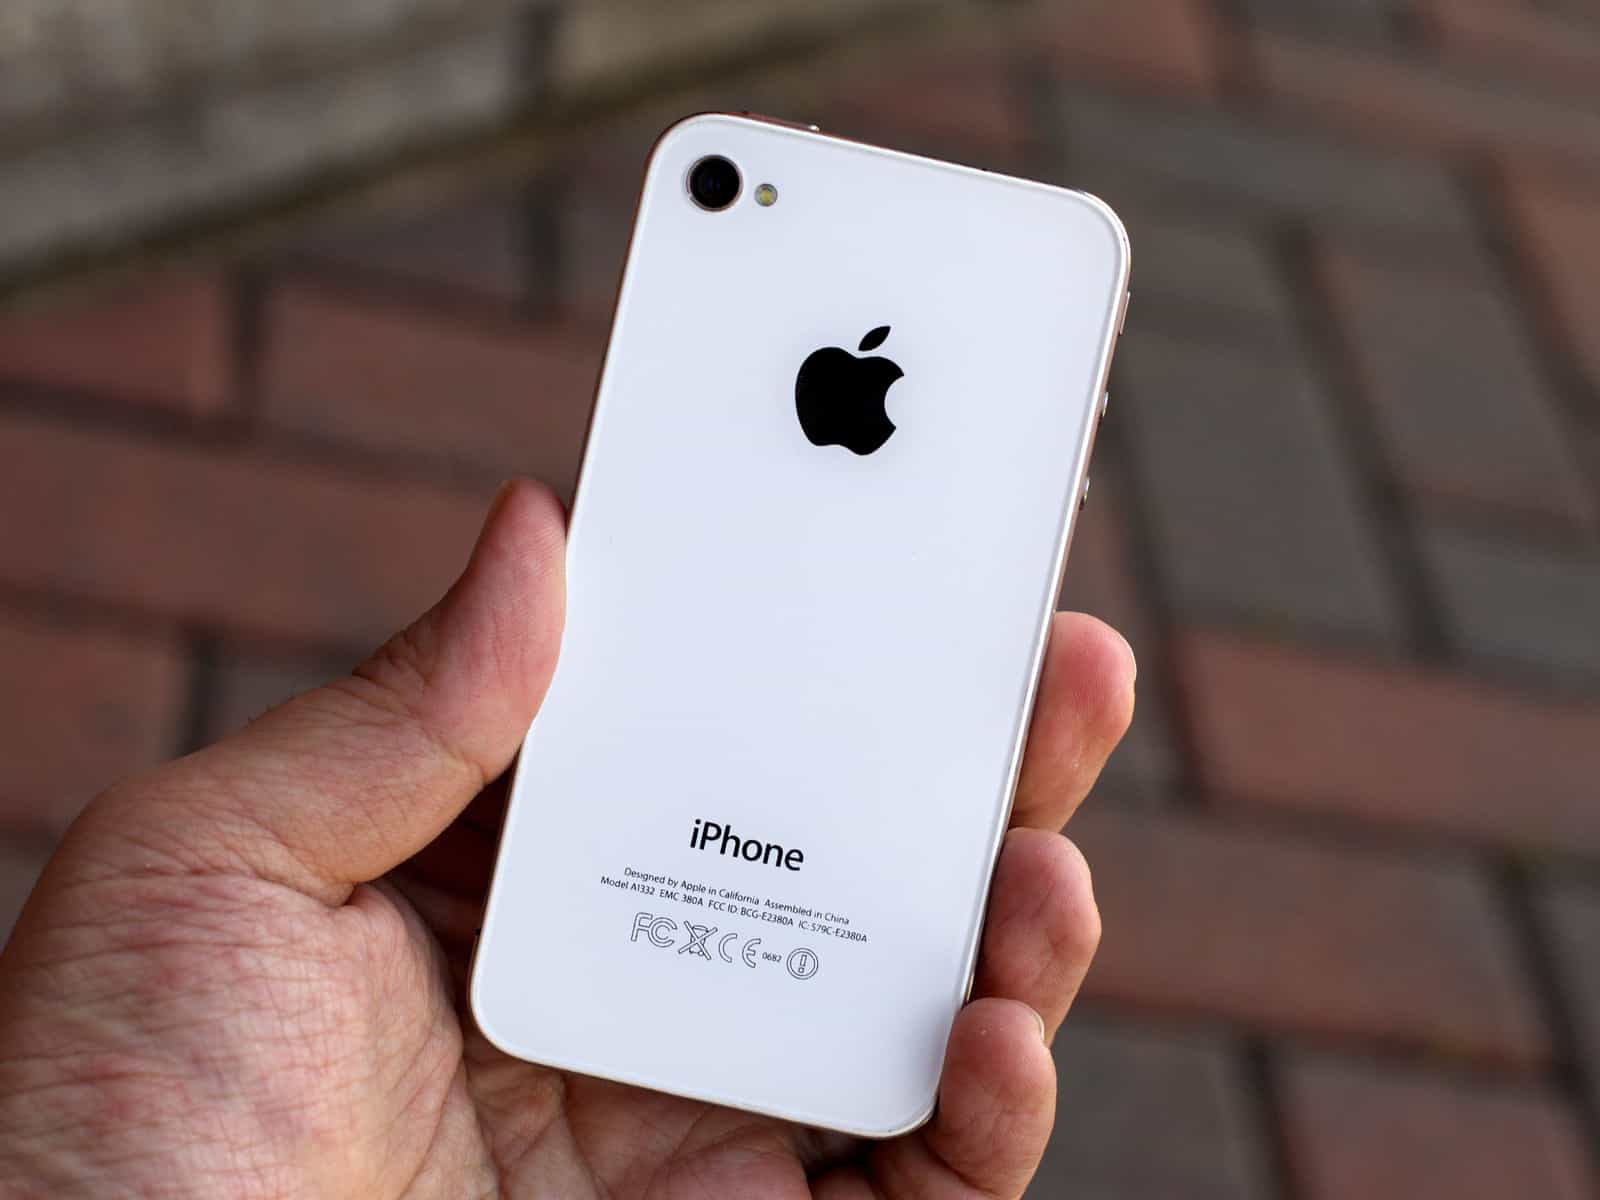 2020 iPhone будет иметь iPhone 4-подобный дизайн, сообщает Kuo